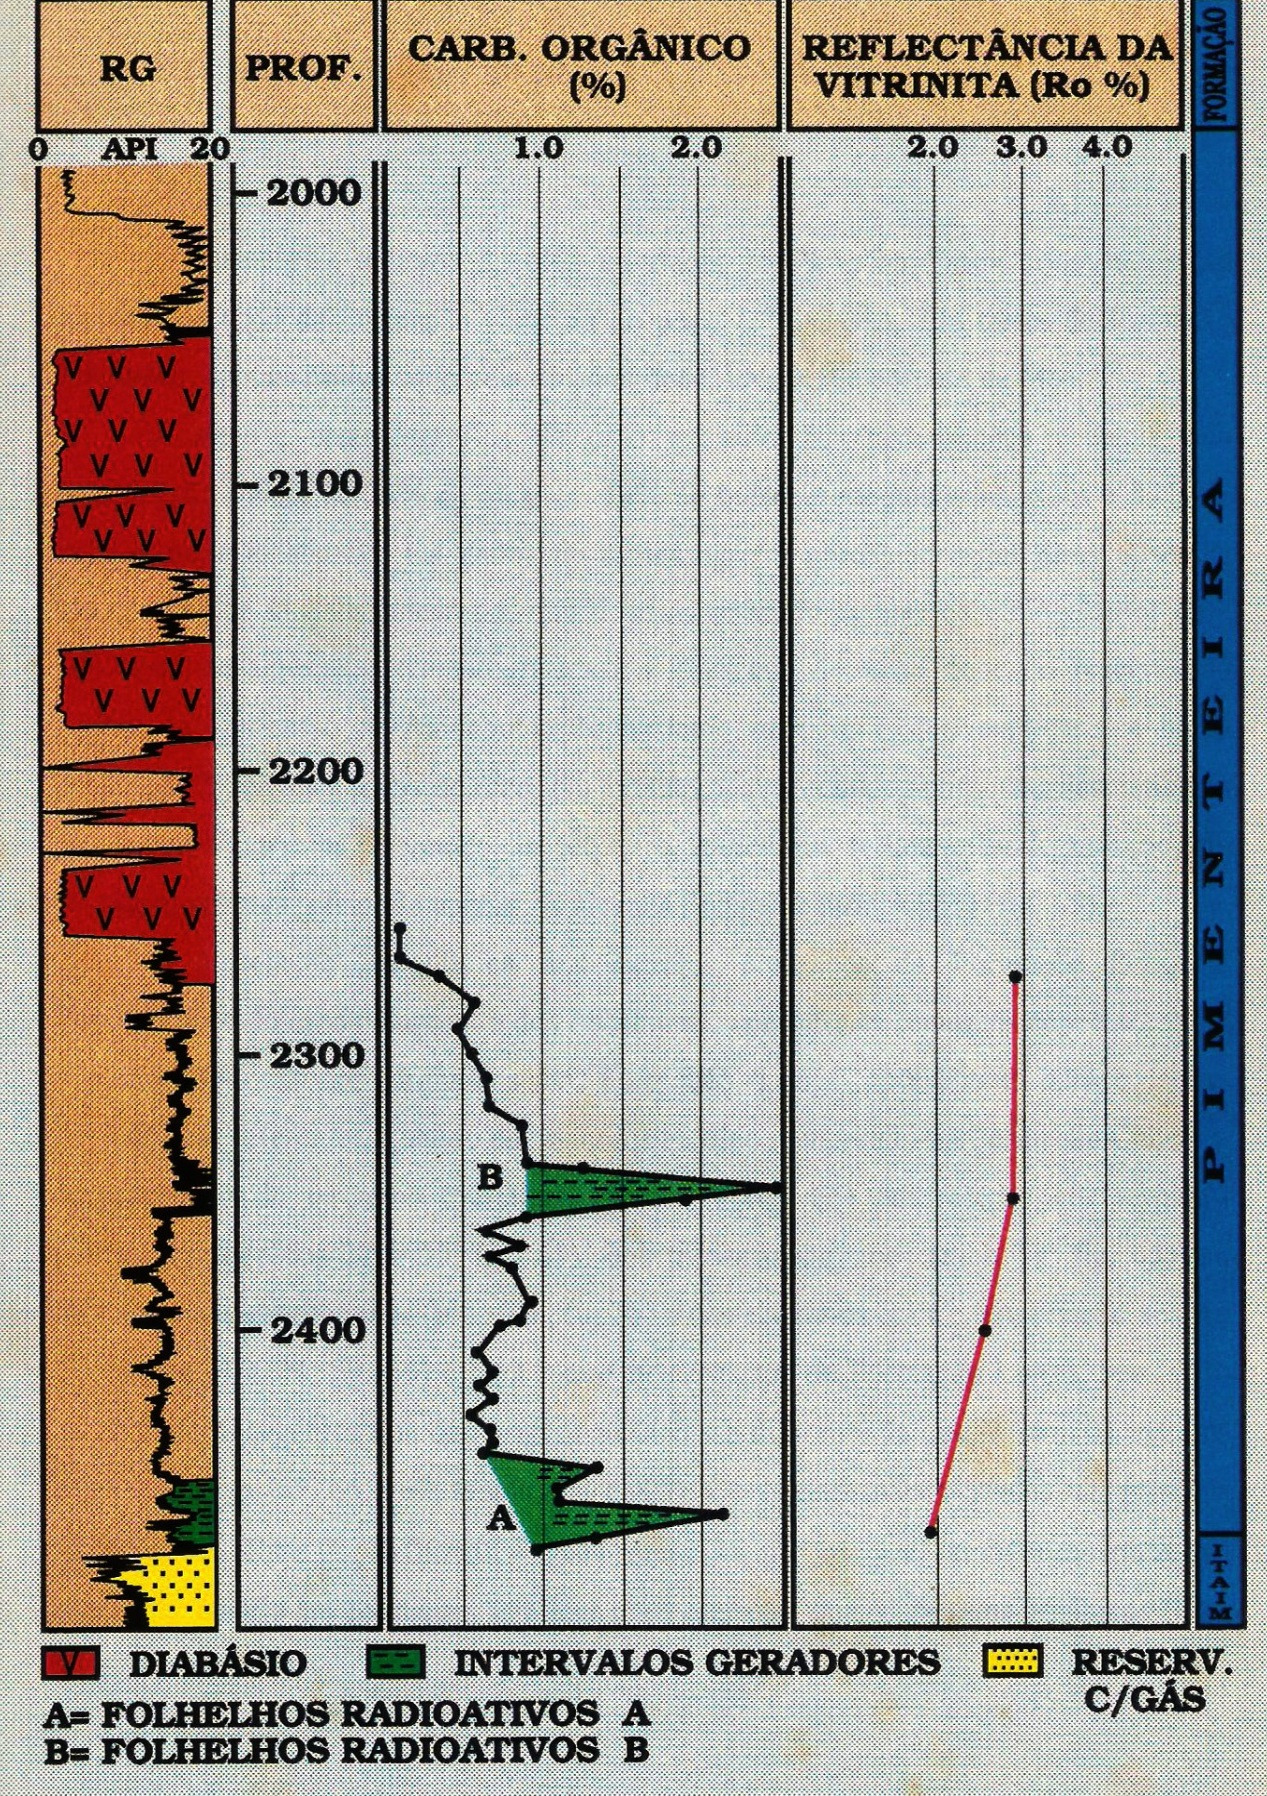 Figura 6-12: Dados de carbono orgânico e reflectância de vitrinita do poço 2-CP-1-MA Fonte: RODRIGUES (1995) 6.3 